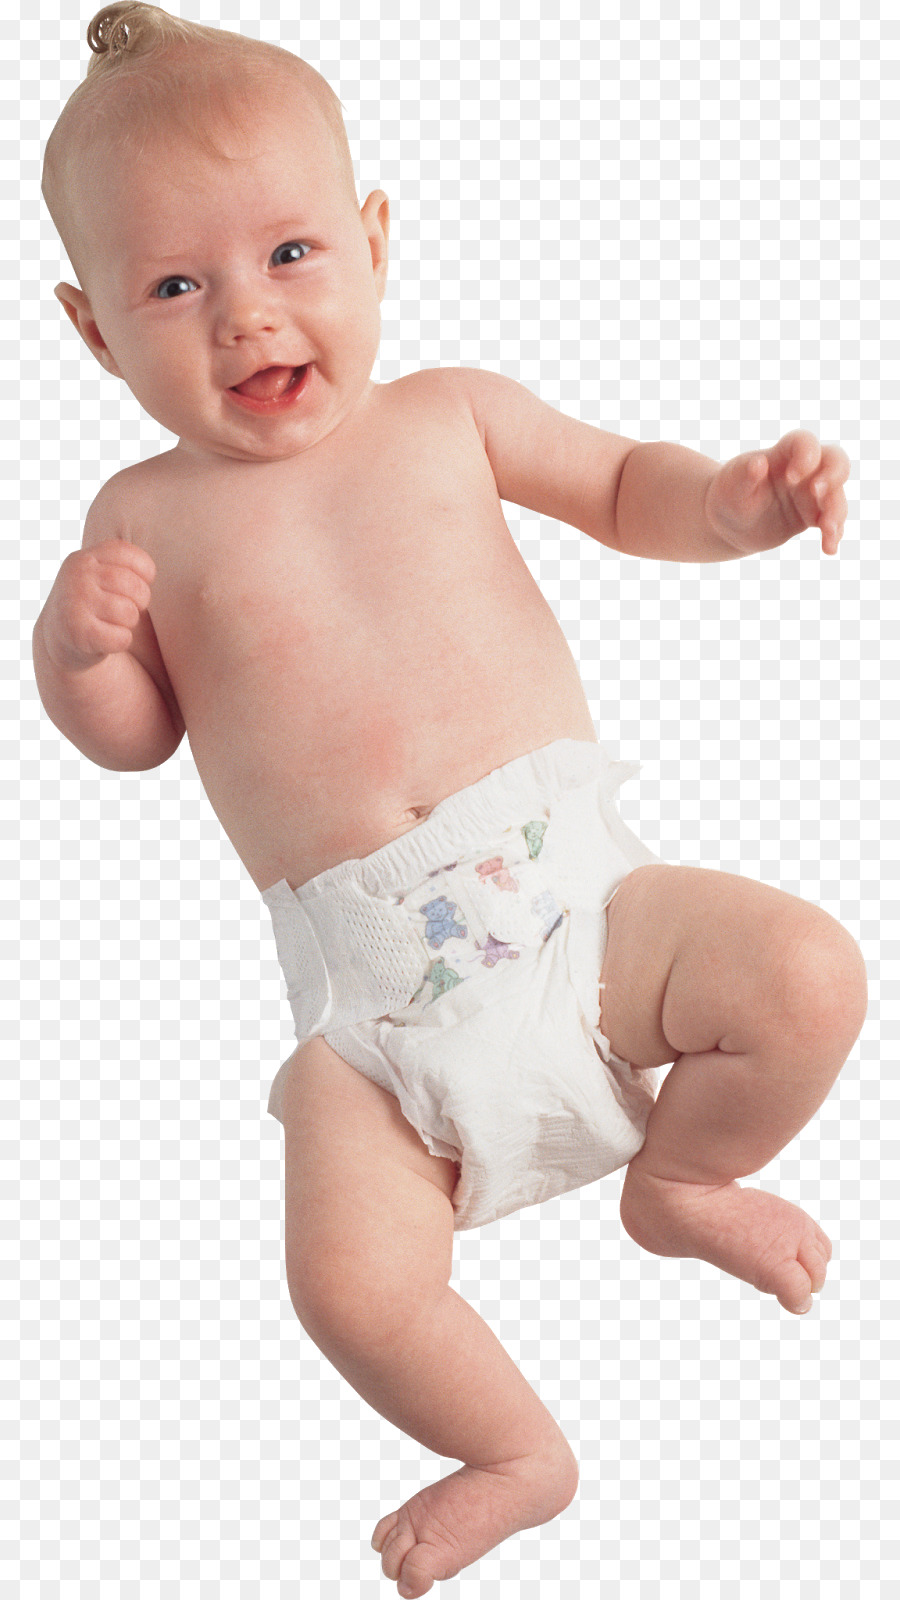 Infant Child Toddler Clip art - child png download - 836*1600 - Free Transparent Infant png Download.